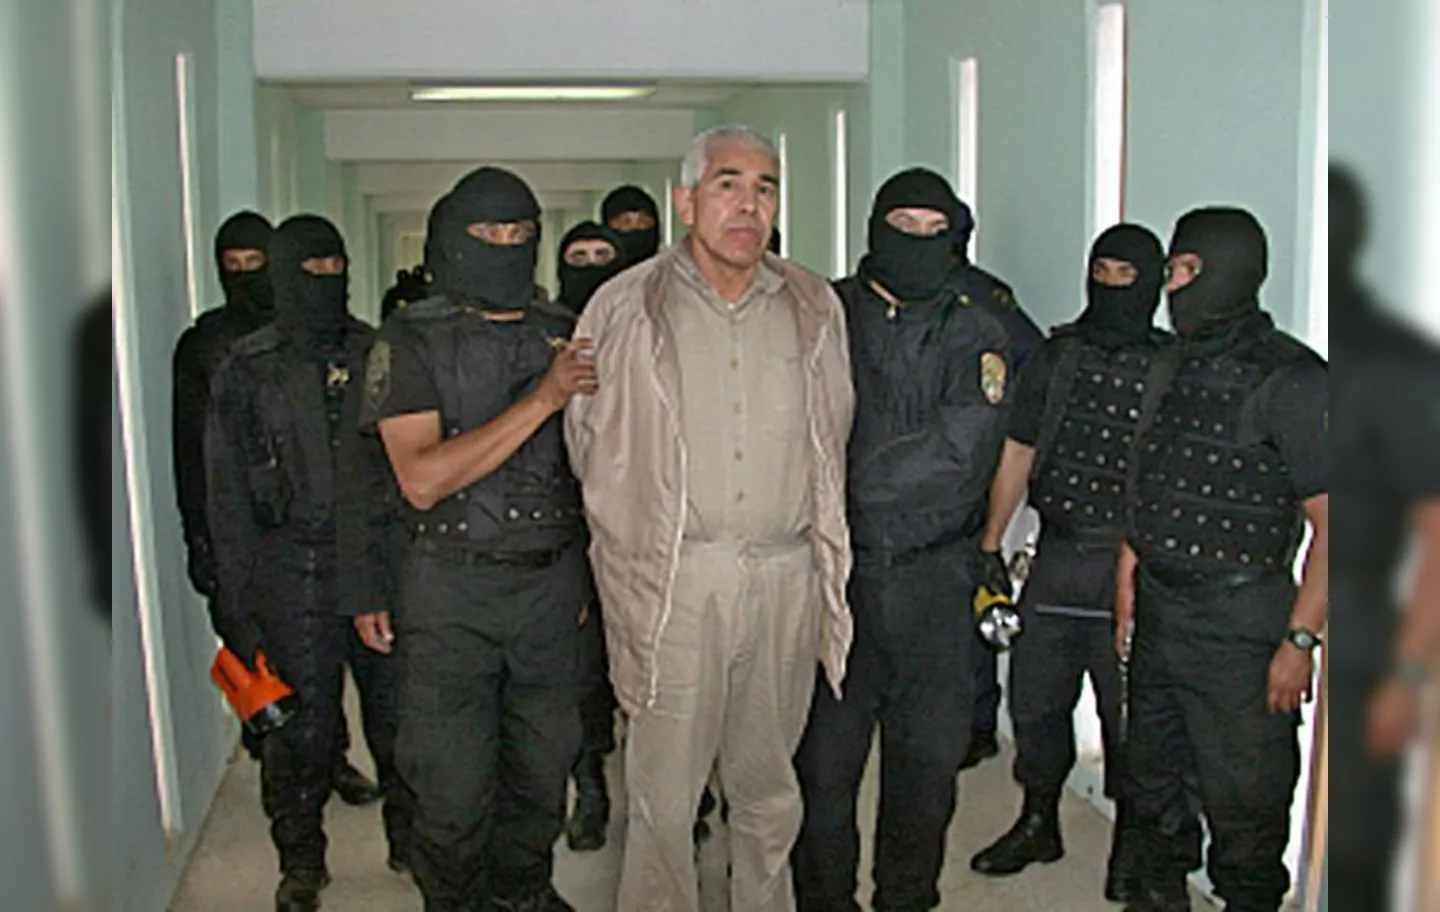 Caro Quintero, um dos 10 mais procurados pelos Estados Unidos, acusado pela morte do agente da DEA Enrique "Kiki" Camarena em 1985